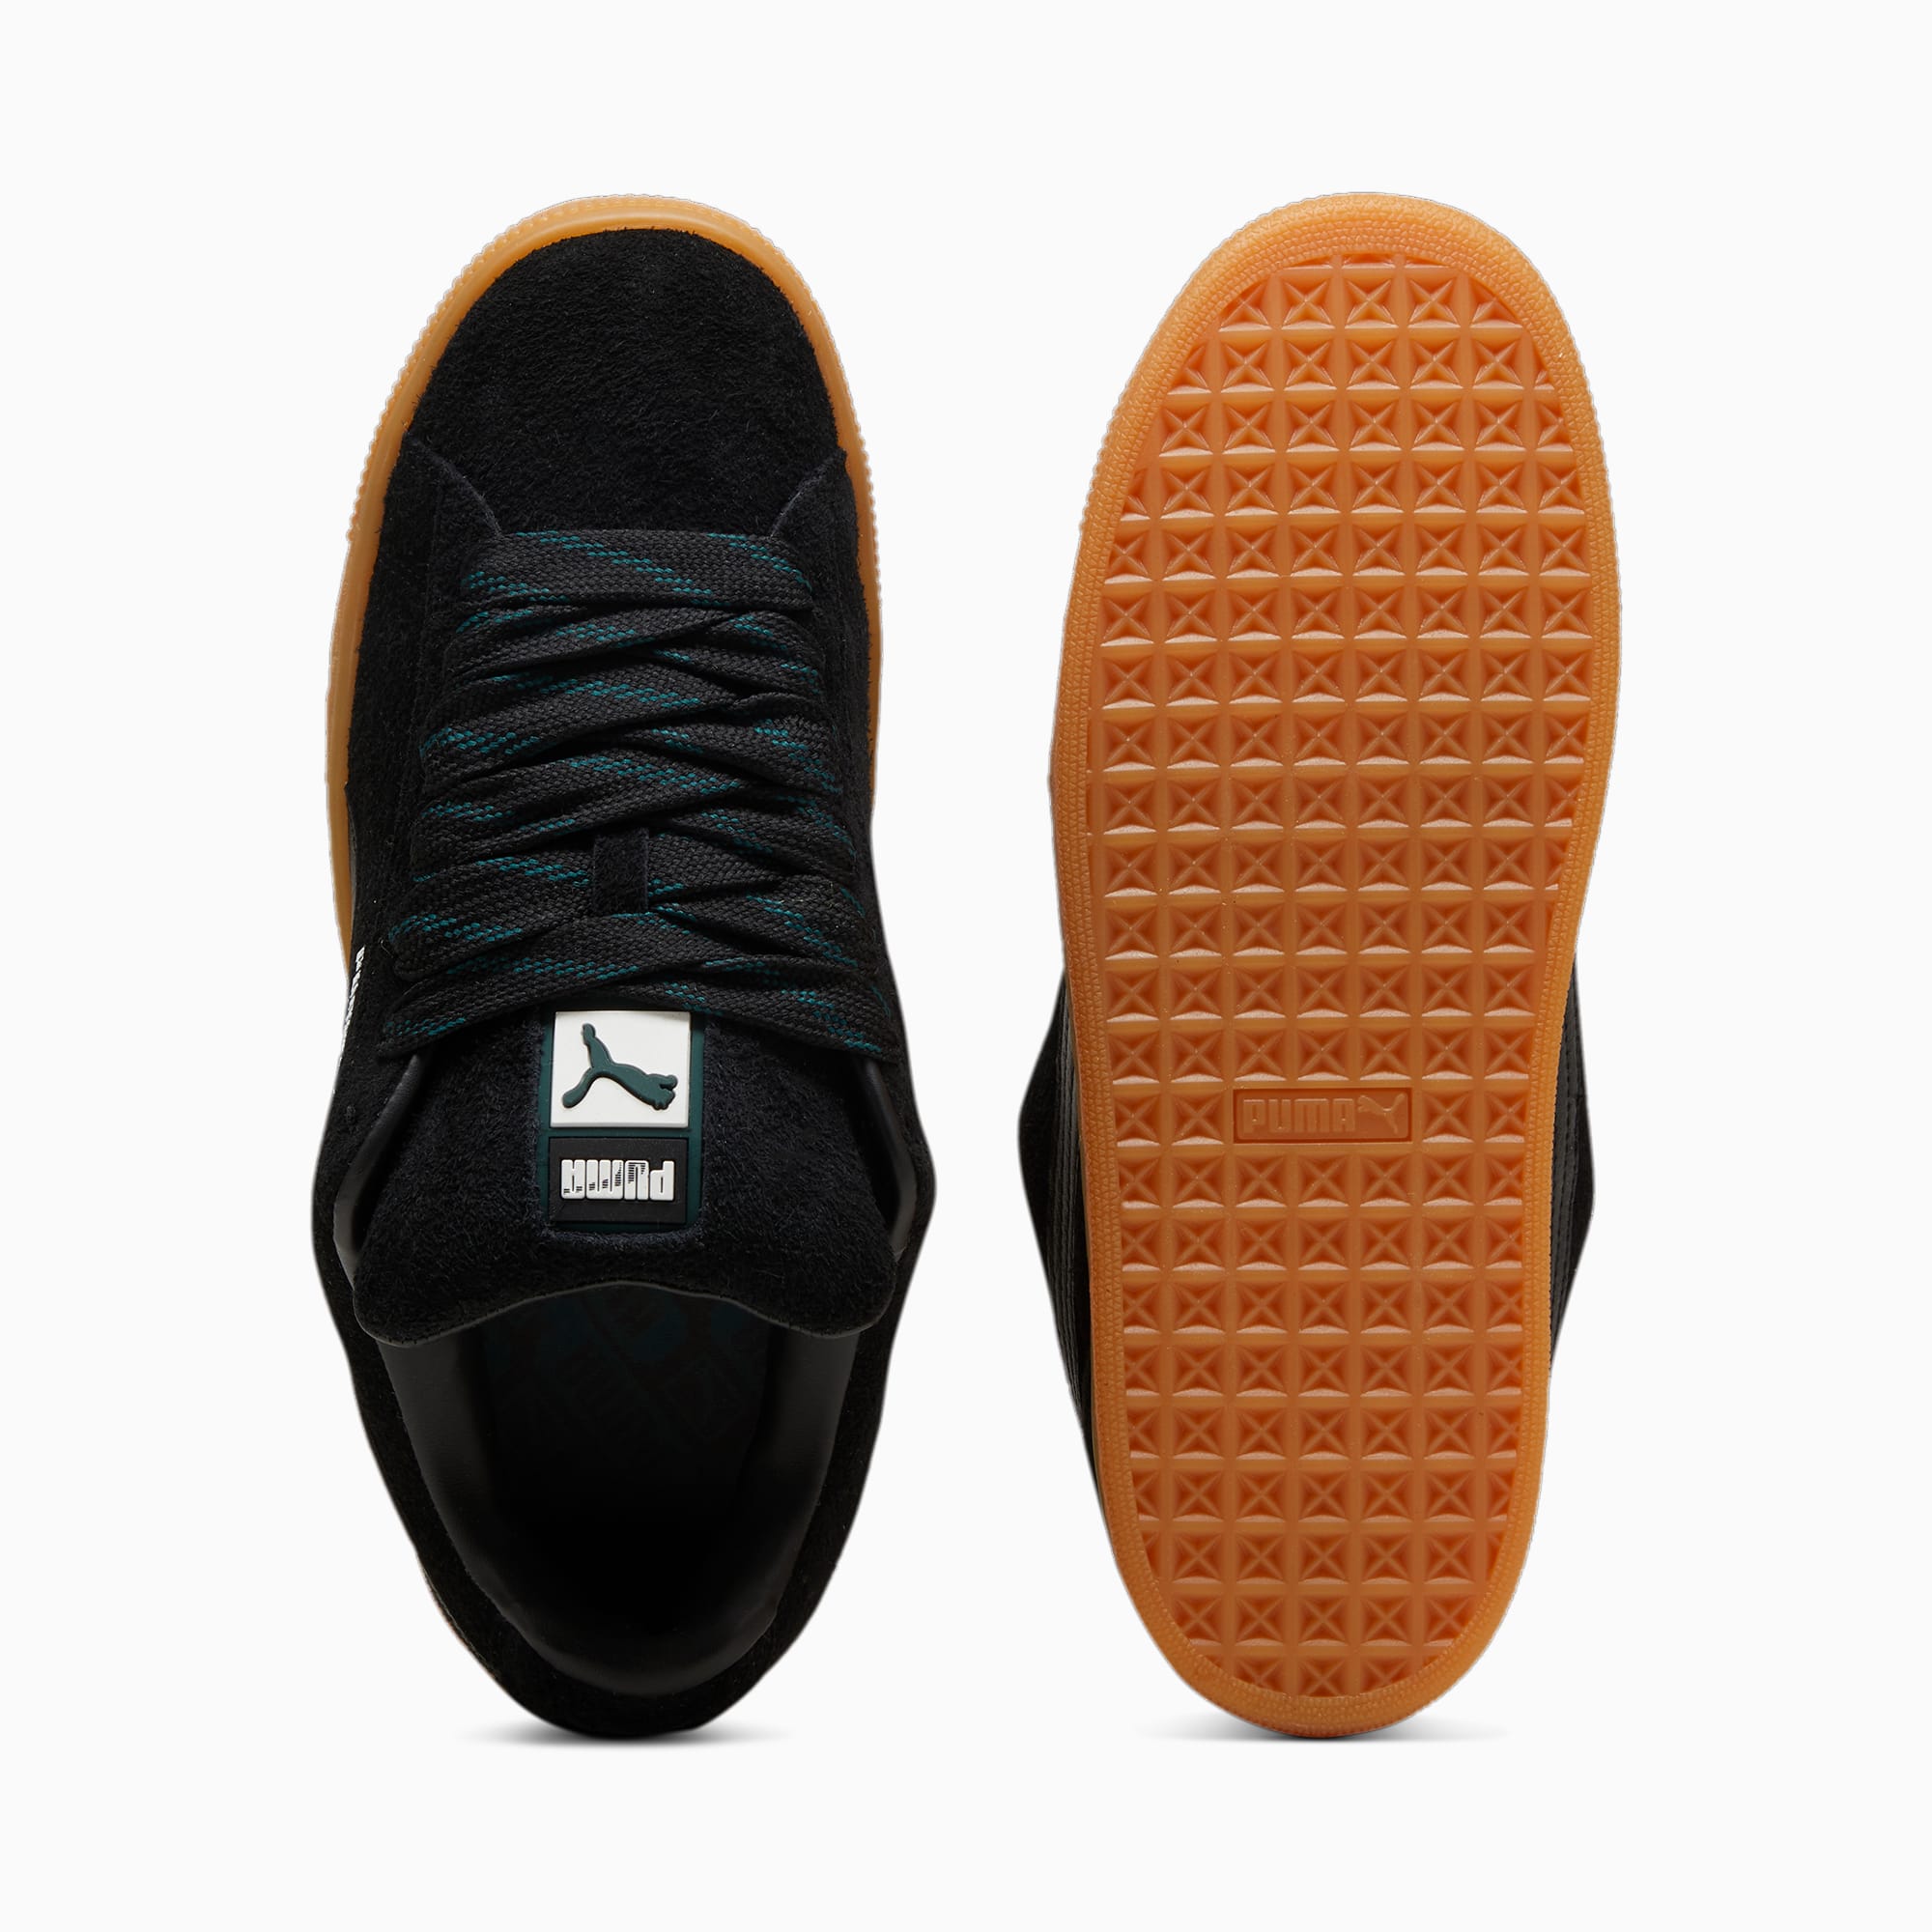 PUMA Suede XL Flecked Sneakers Unisex Schuhe, Schwarz/Grün, Größe: 35.5, Schuhe